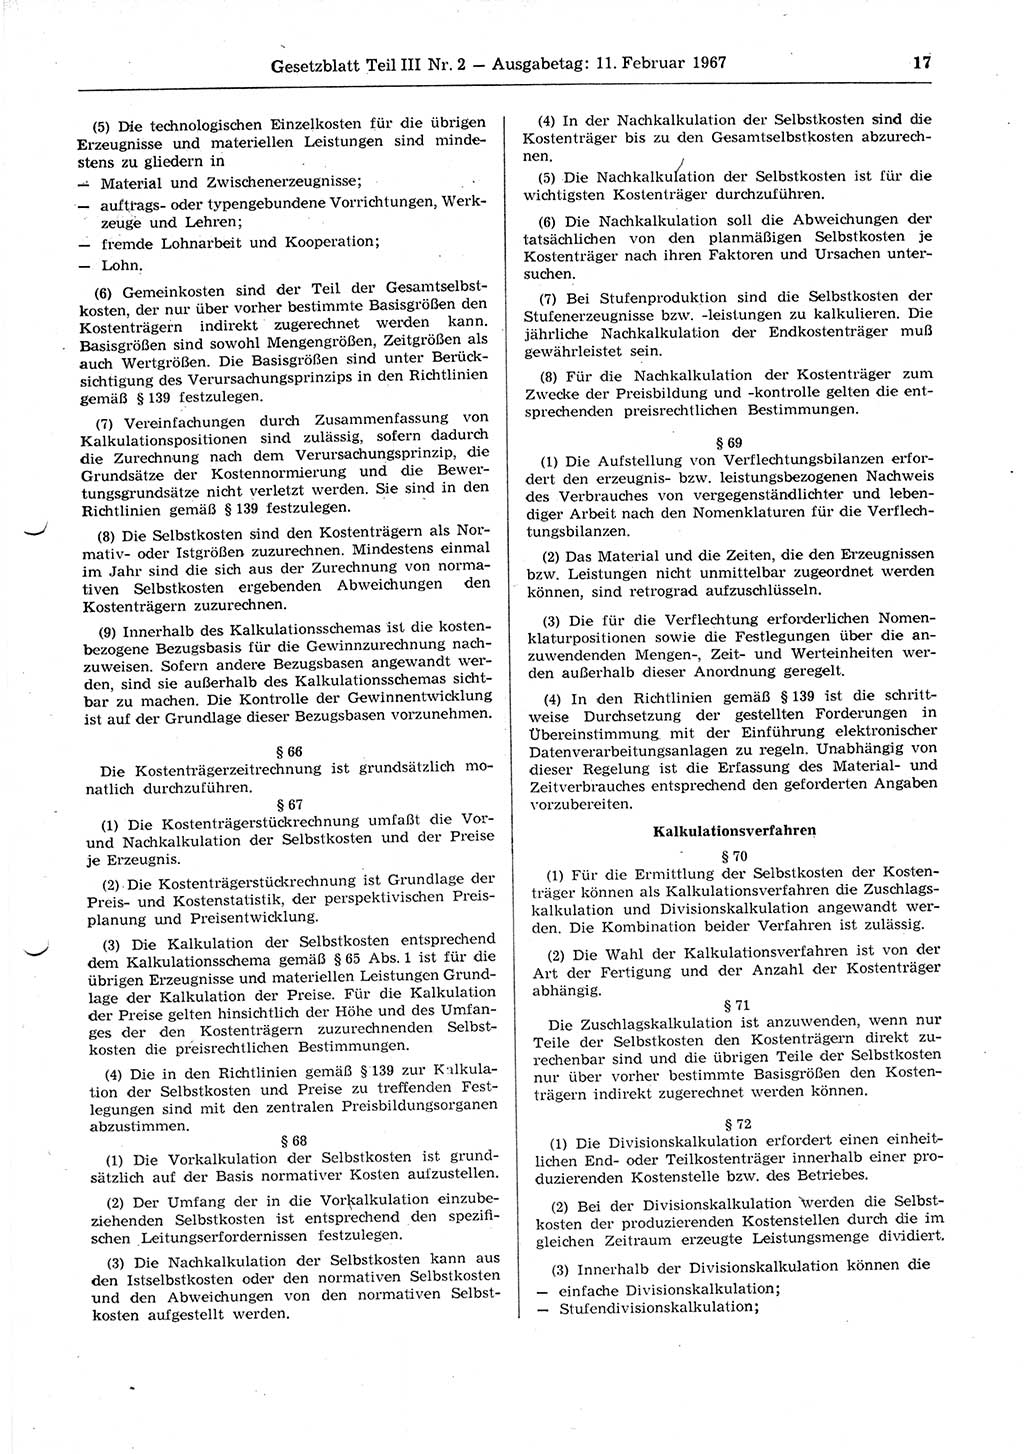 Gesetzblatt (GBl.) der Deutschen Demokratischen Republik (DDR) Teil ⅠⅠⅠ 1967, Seite 17 (GBl. DDR ⅠⅠⅠ 1967, S. 17)